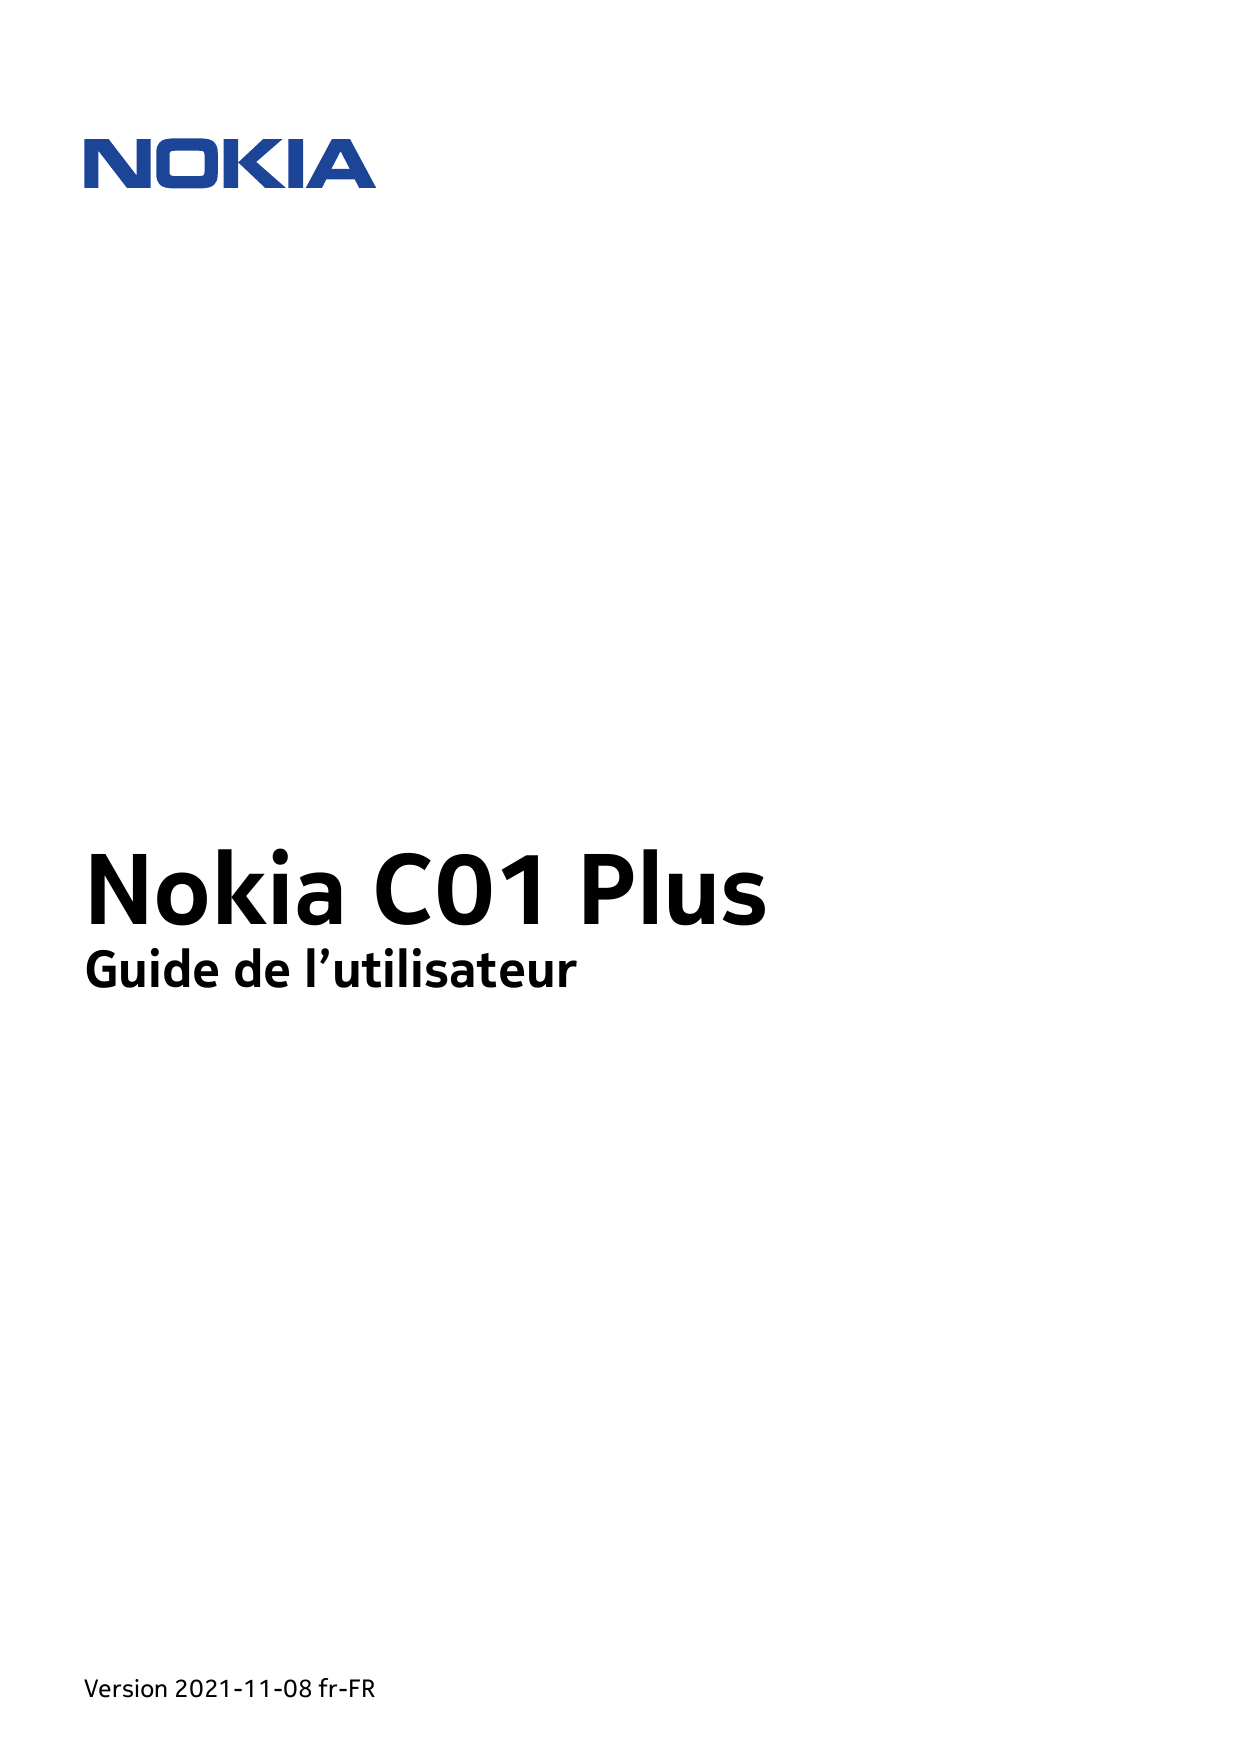 Nokia C01 PlusGuide de l’utilisateurVersion 2021-11-08 fr-FR